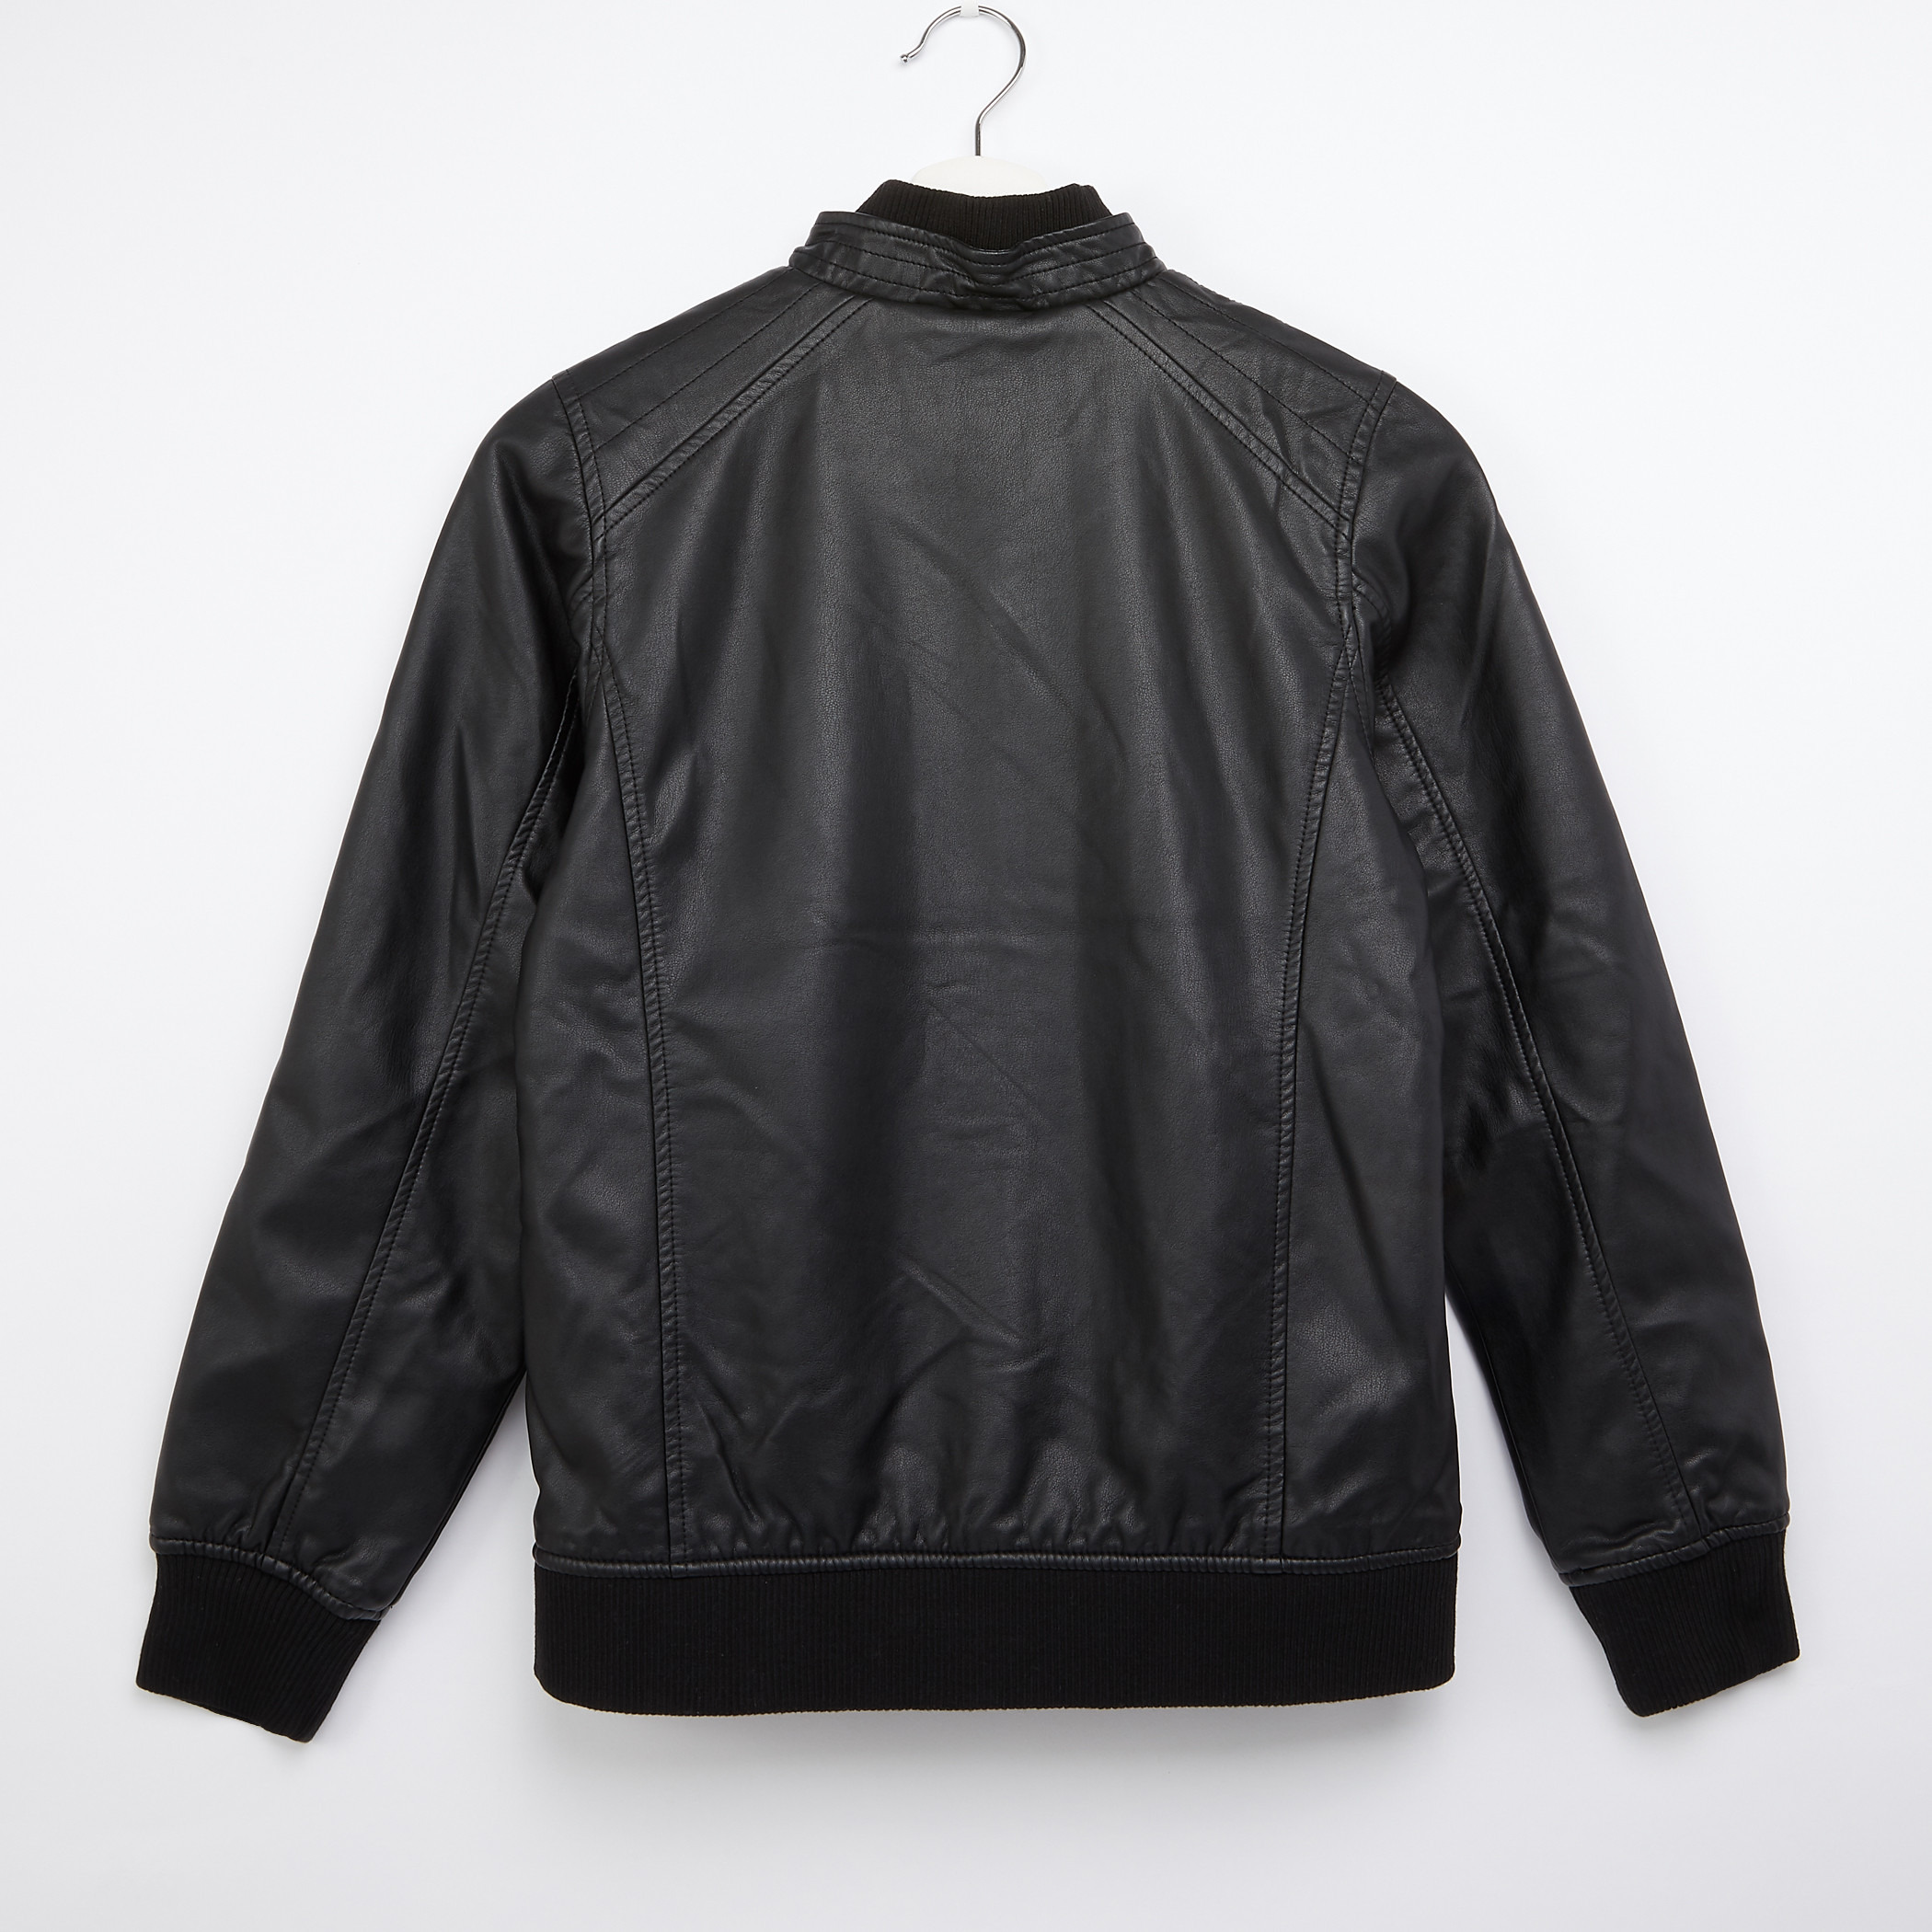 Buy Lee Cooper Girls Black Solid Biker Jacket - Jackets for Girls 7821143 |  Myntra